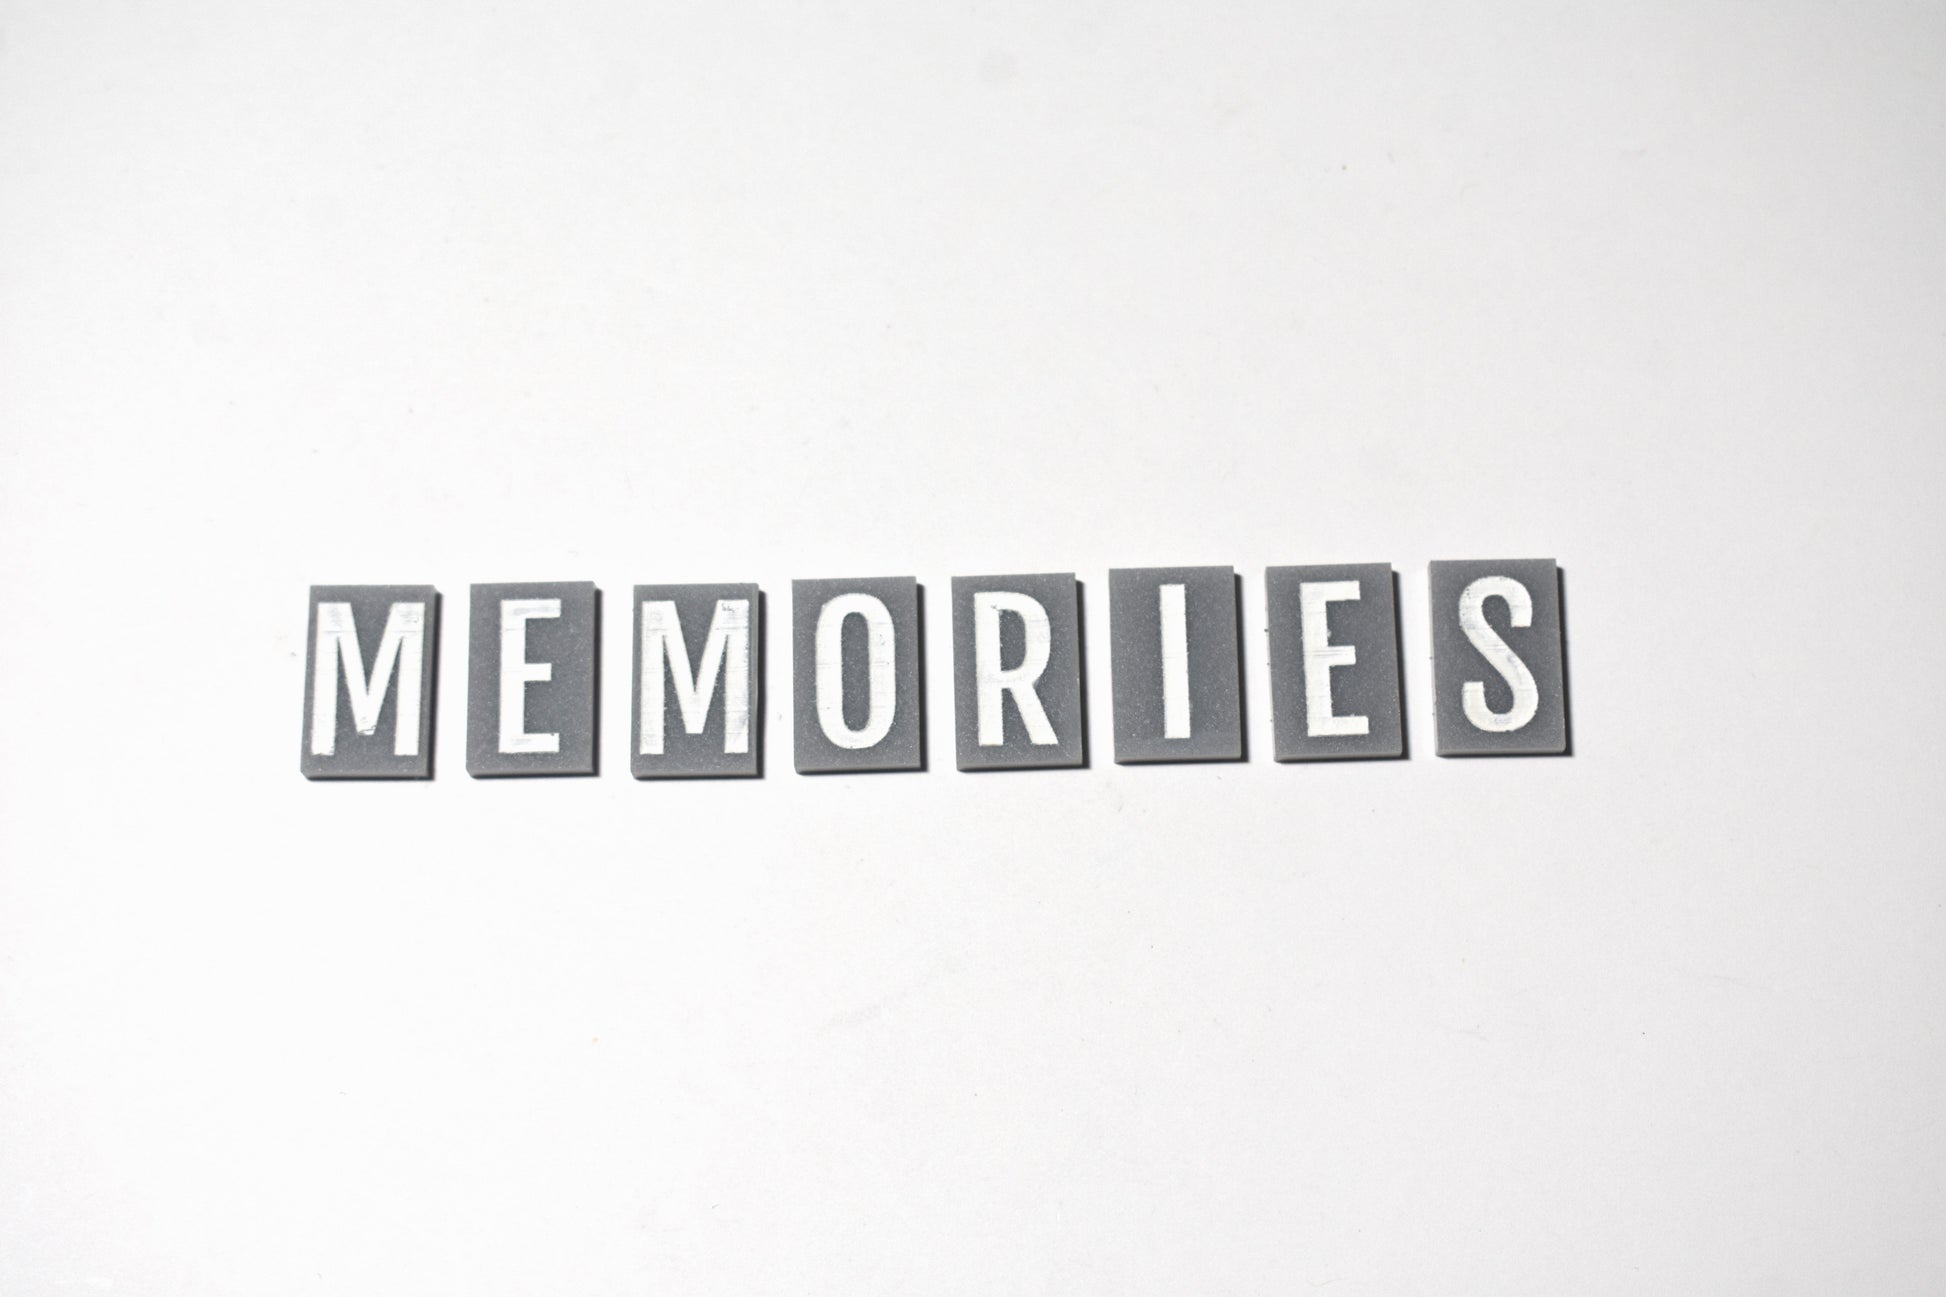 Memories tiles - Creative Designs By Kari